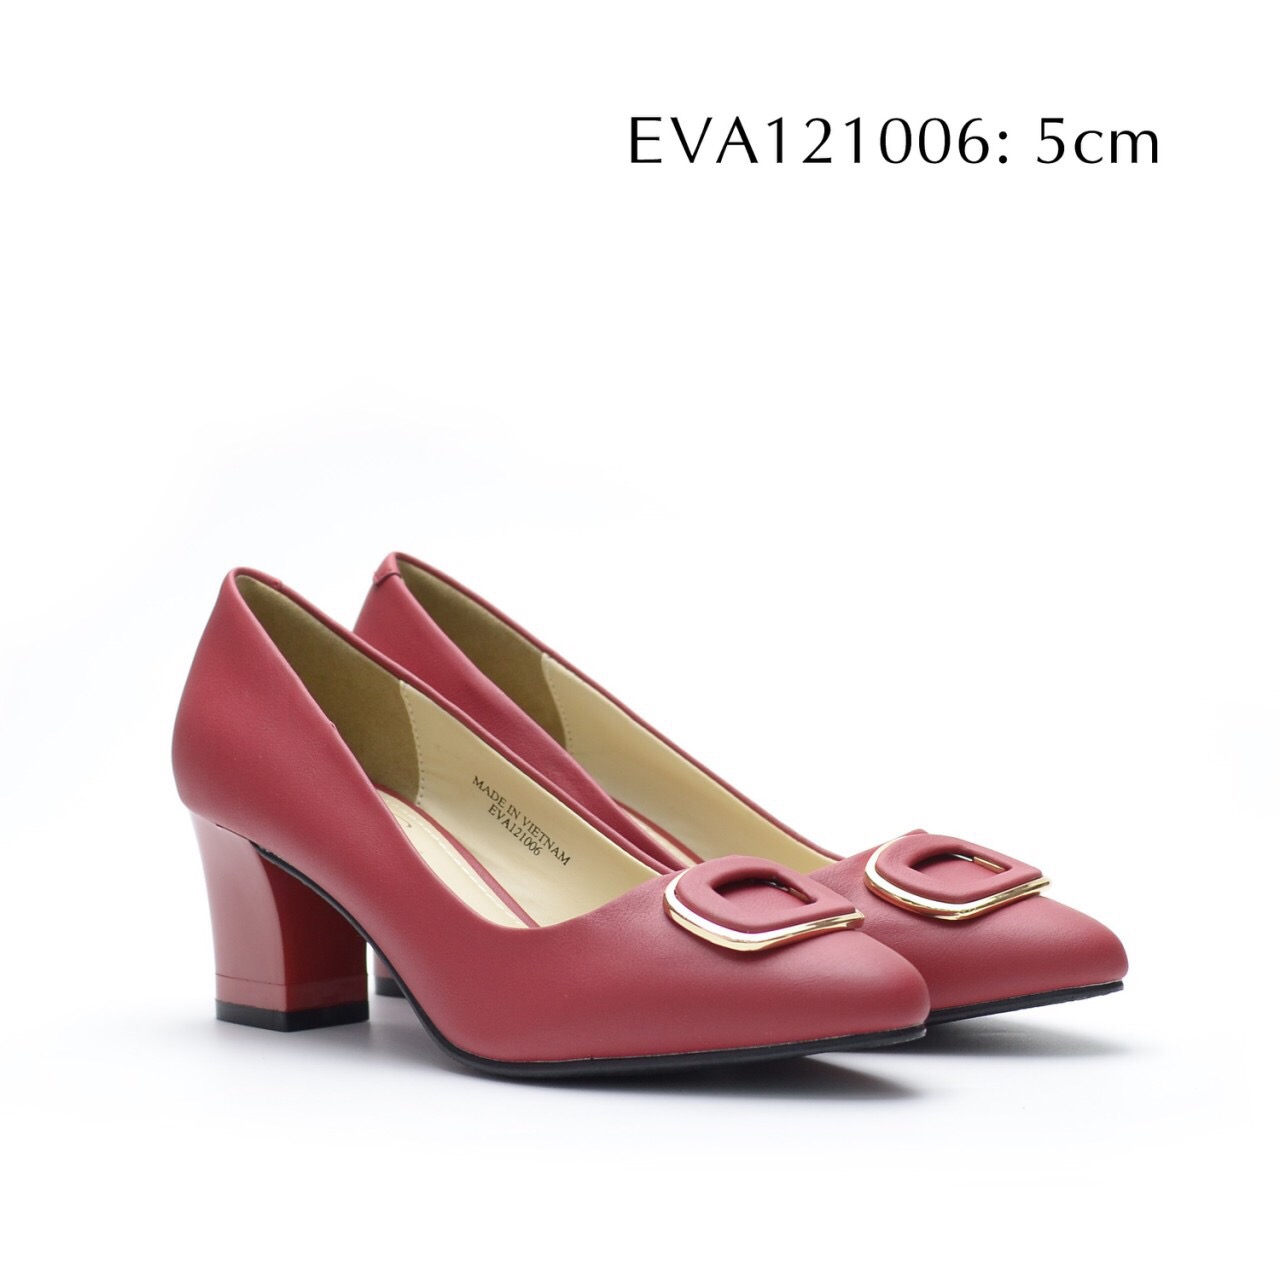 Giày công sở đế vuông EVA121006 kiểu dáng thời trang, sang trọng